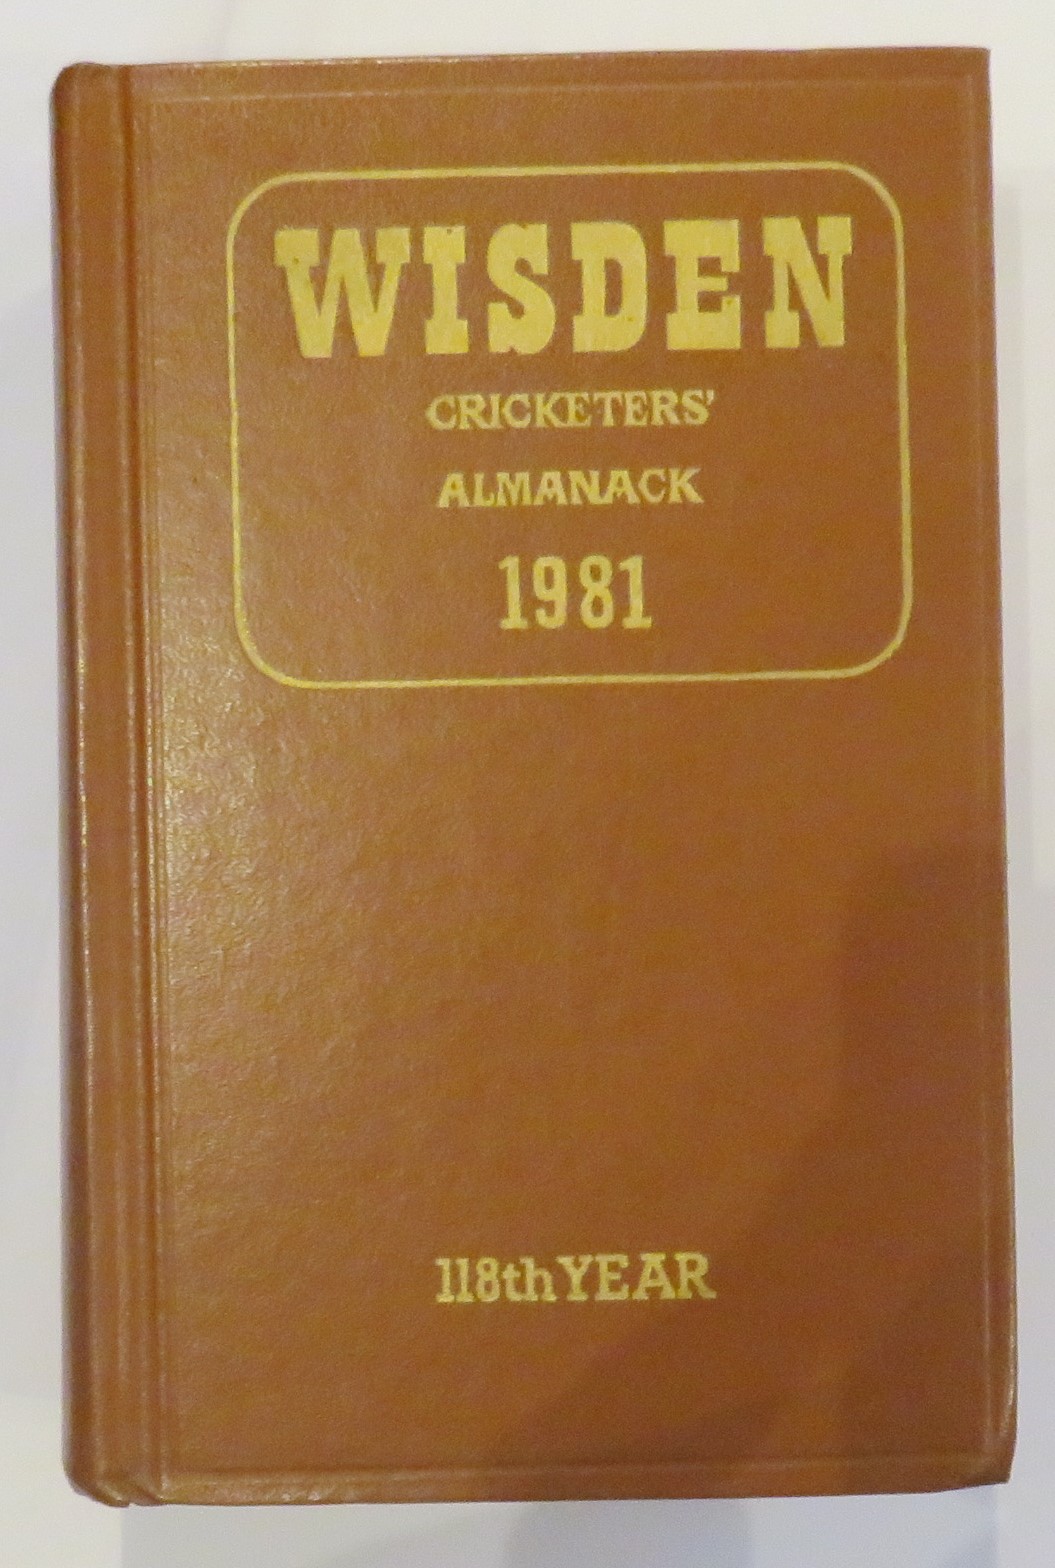 Wisden Cricketers' Almanack 1981